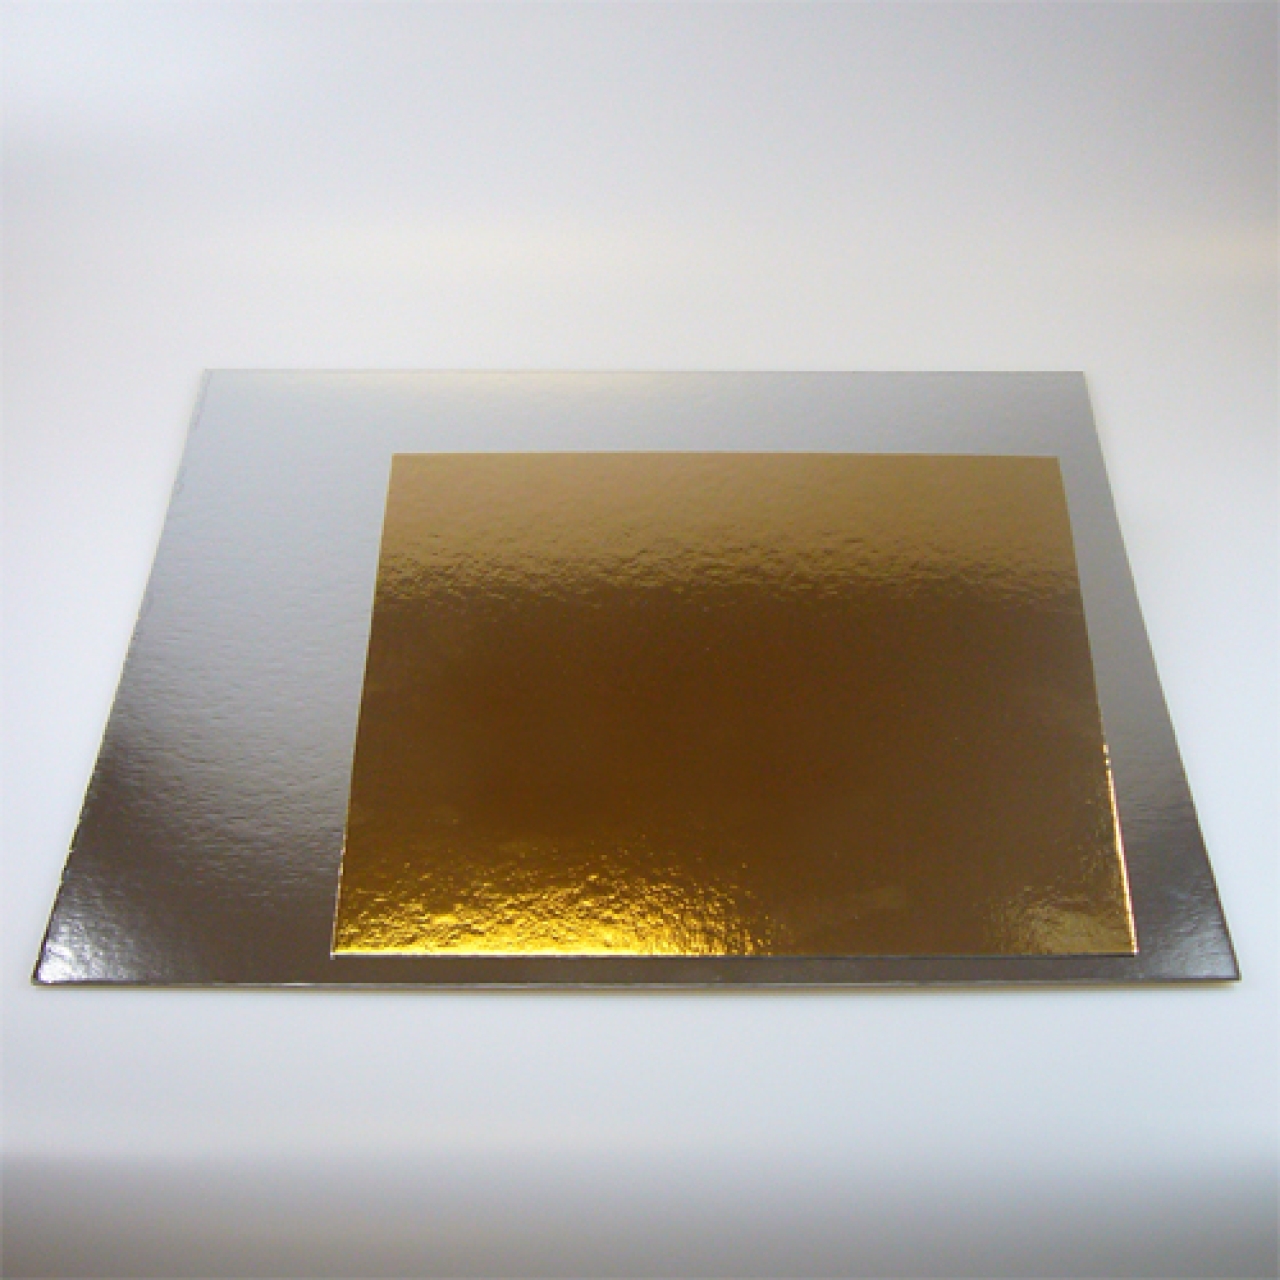 Tortenscheibe, gold & silber (beideseitig) ca. 20 cm, quadrat, 3 Stk.